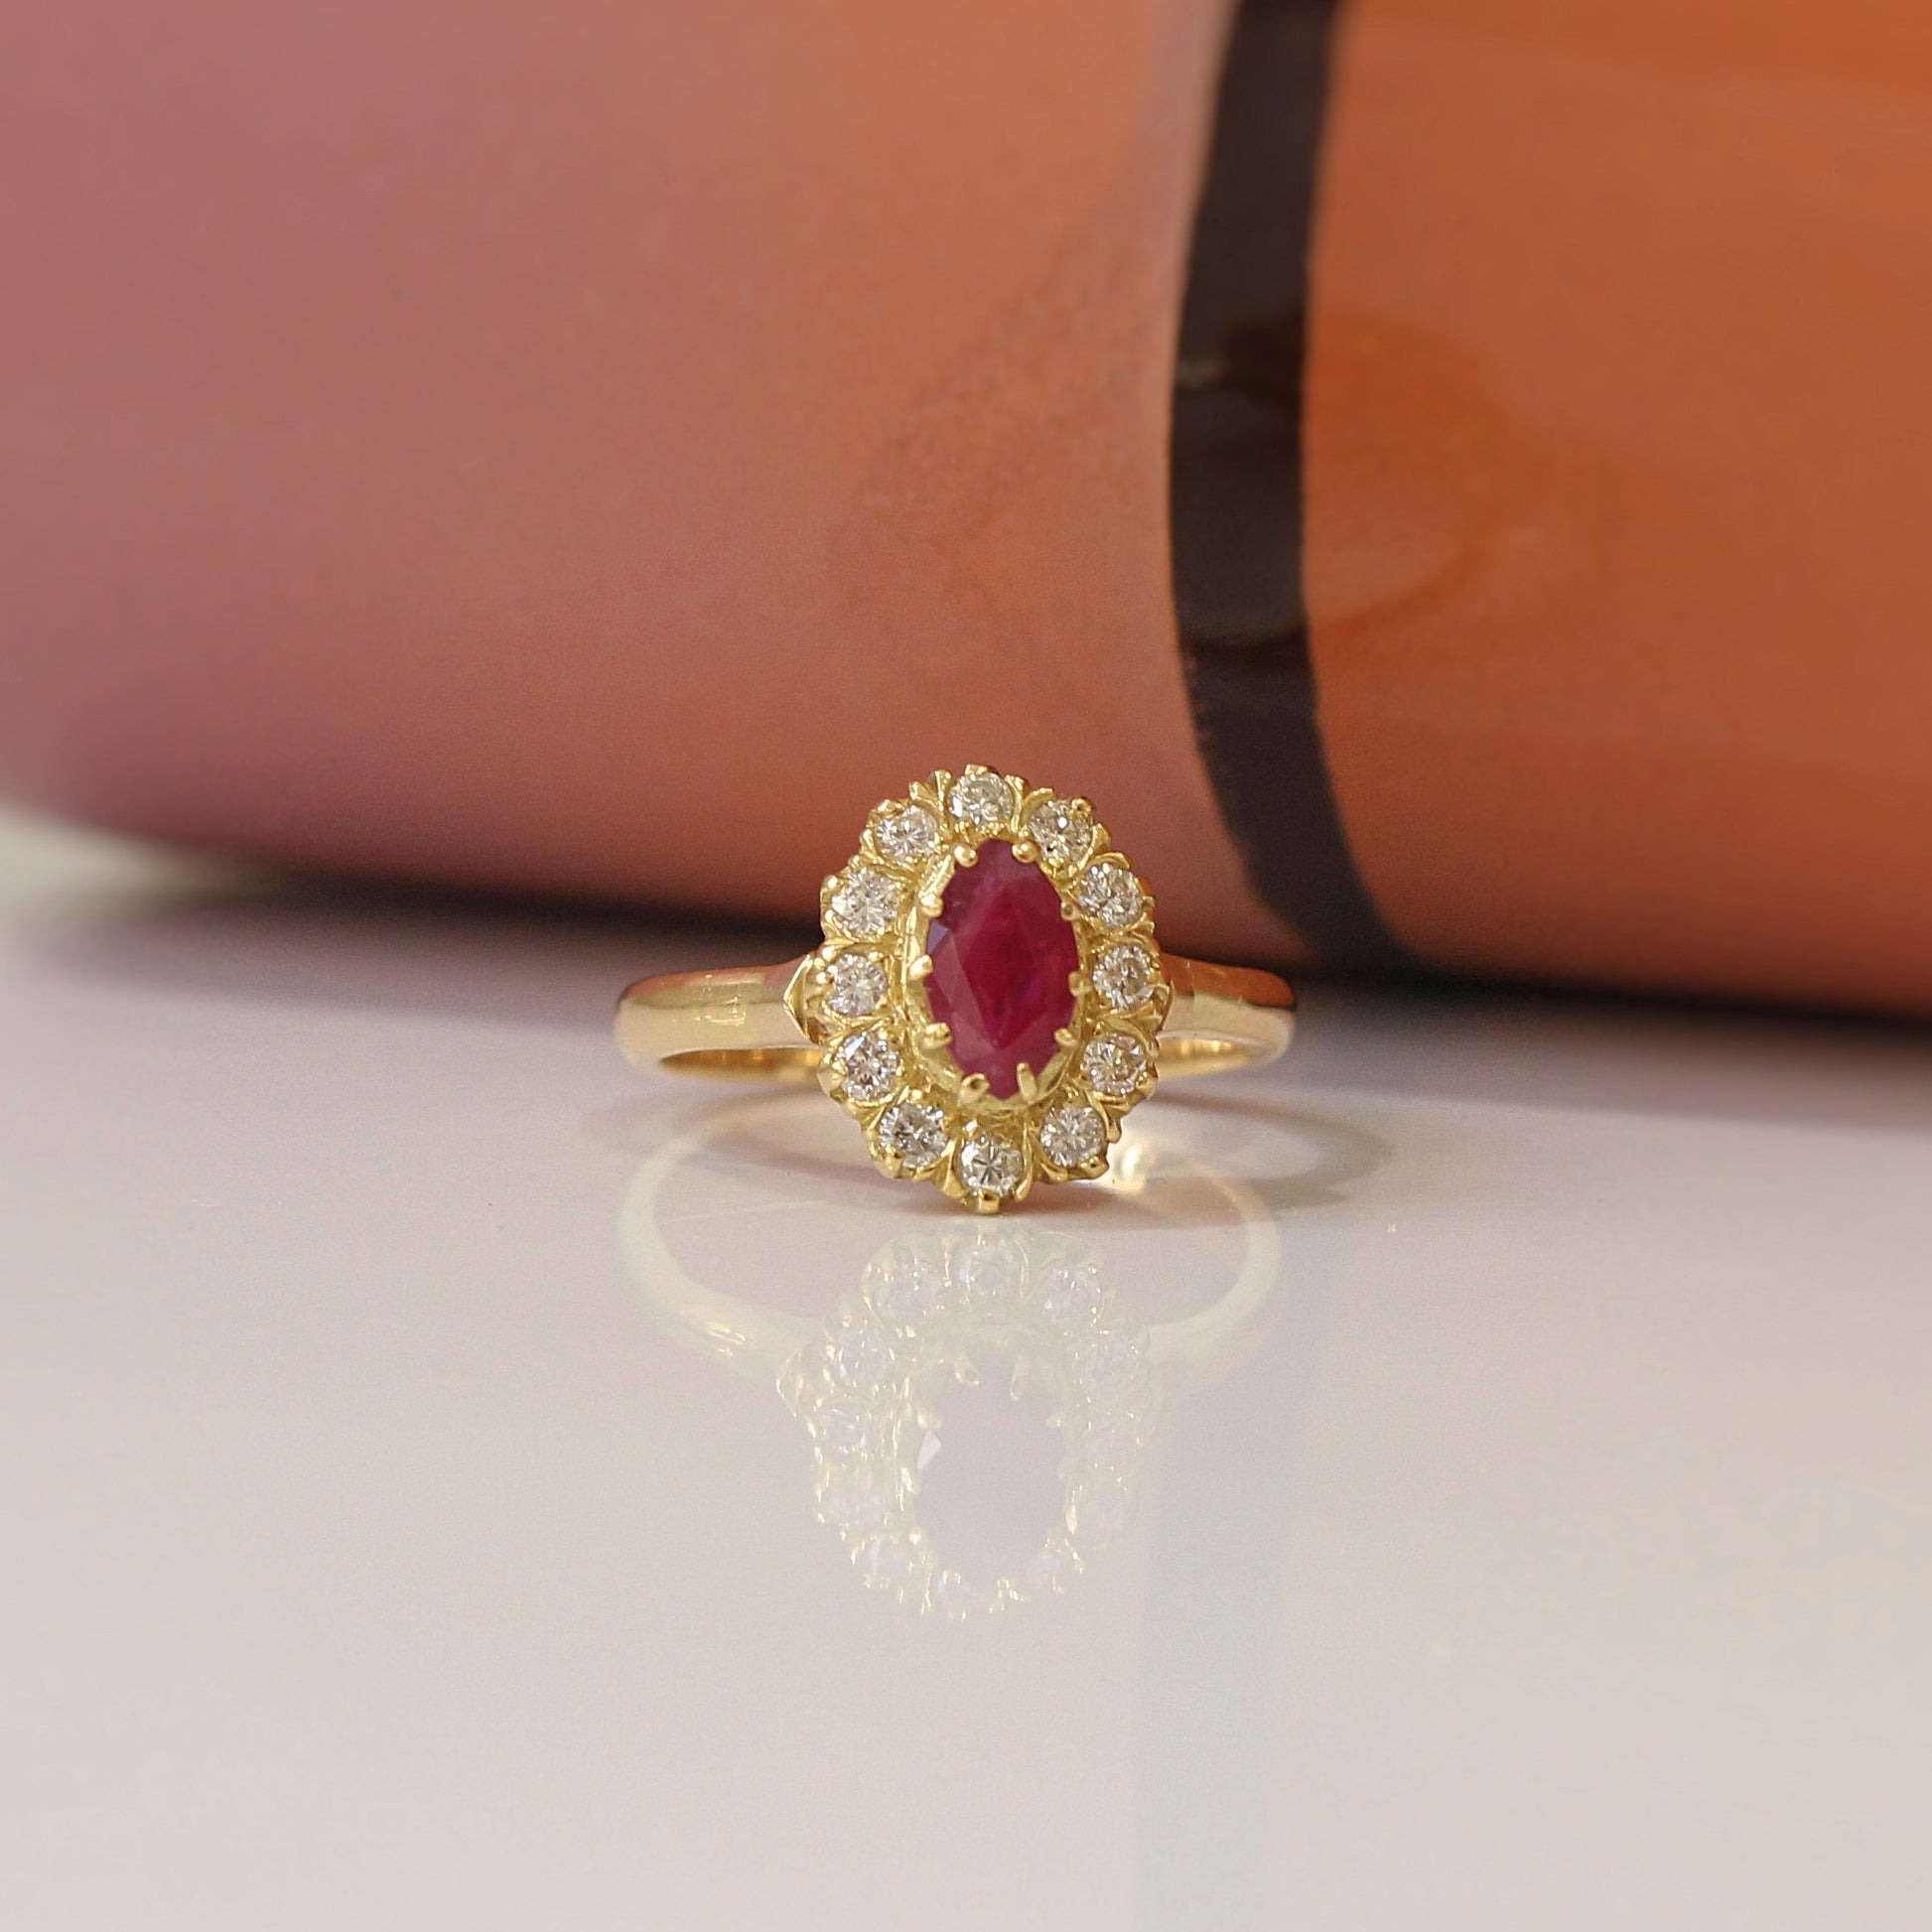 charmante petite bague marguerite avec rubis et diamants, monture en or jaune 750/1000